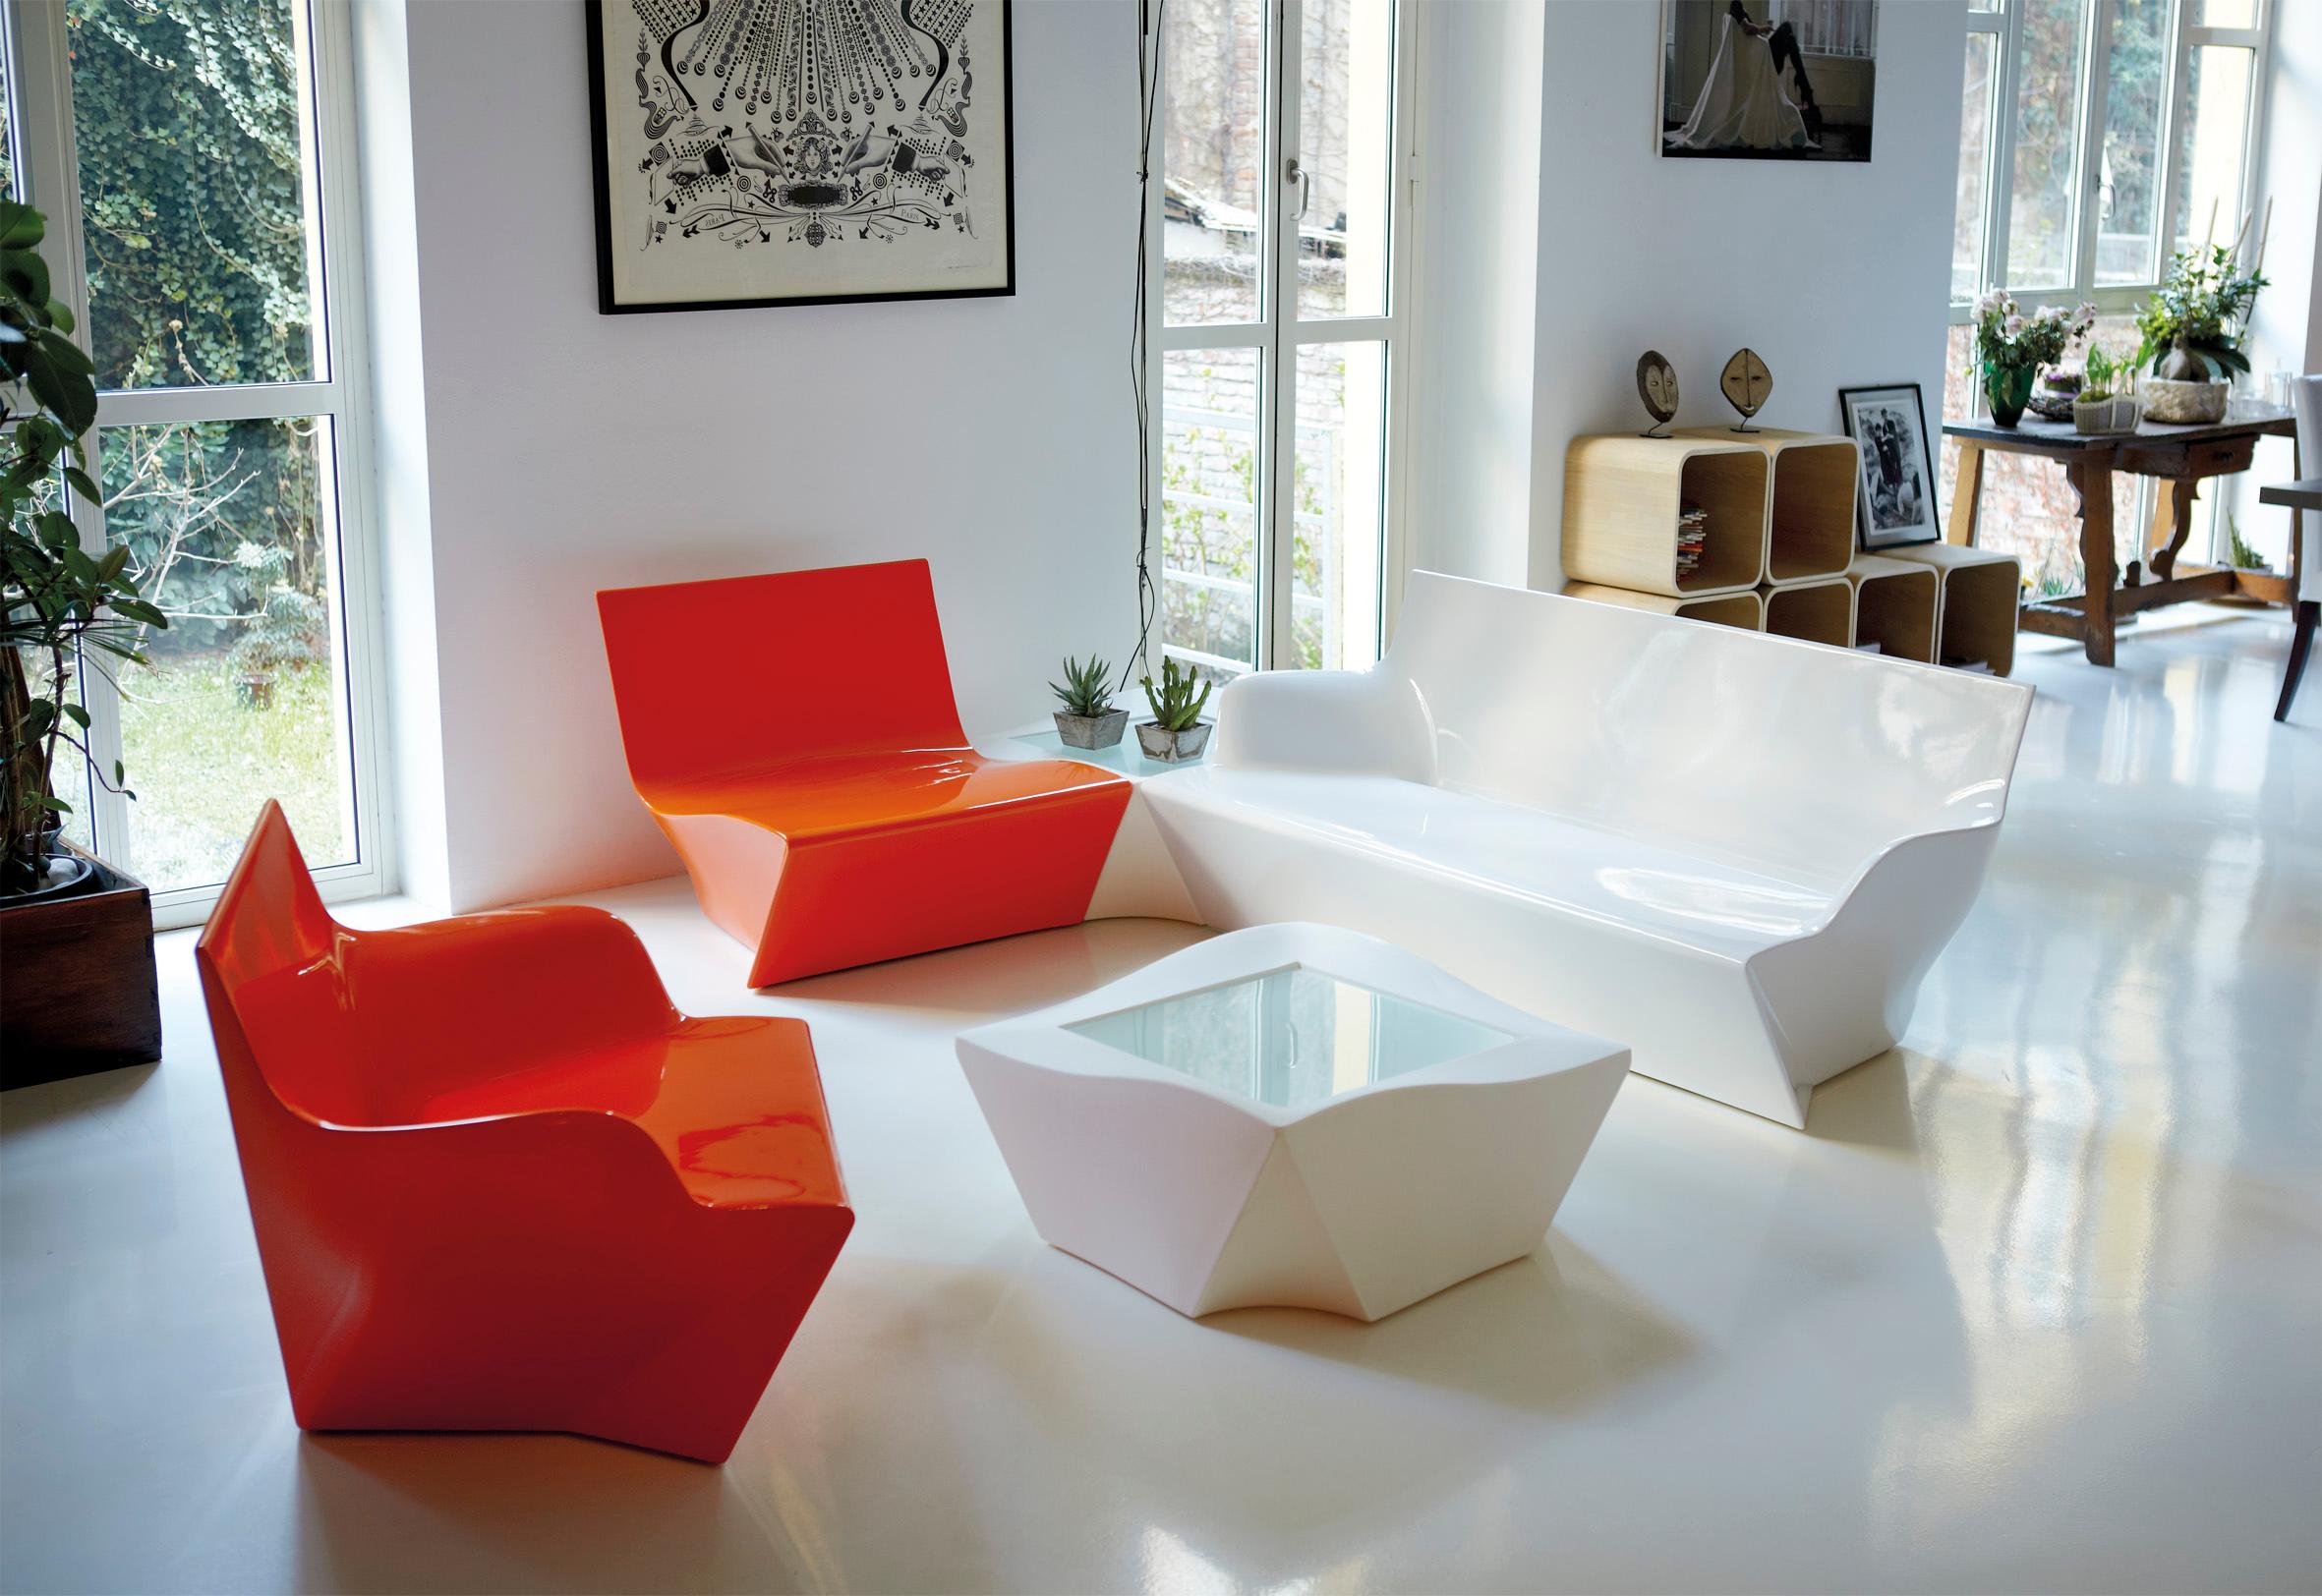 Kami Ichi niedriger Stuhl in Taubengrau von Marc Sadler
Abmessungen: T 75 x B 80 x H 70 cm. Sitzhöhe: 35 cm.
MATERIALEN: Polyethylen.
Gewicht: 15 kg.

Erhältlich in verschiedenen Farbvarianten. Dieses Produkt ist für die Verwendung im Innen- und